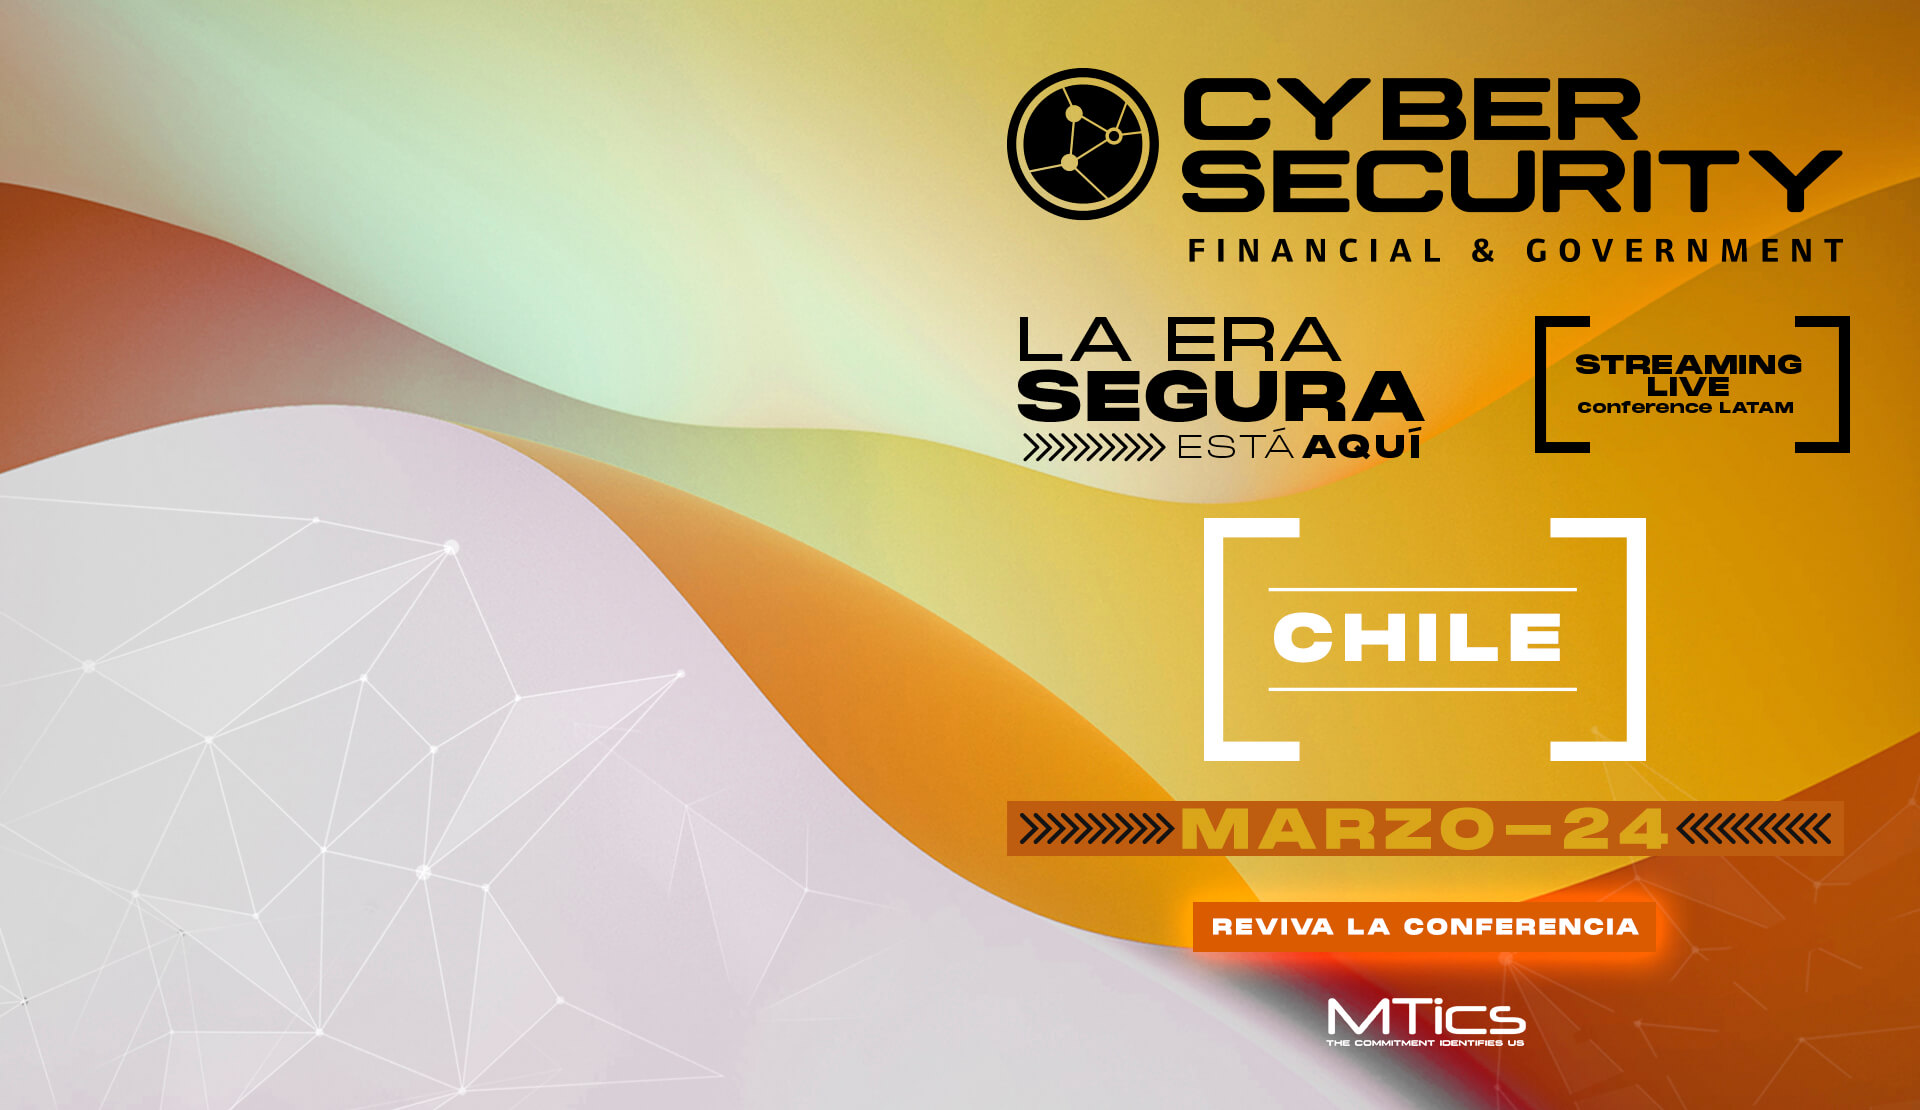 Eventos de ciberseguridad en chile 2022 - Cybersecurity Financial & Government 2022 Chile